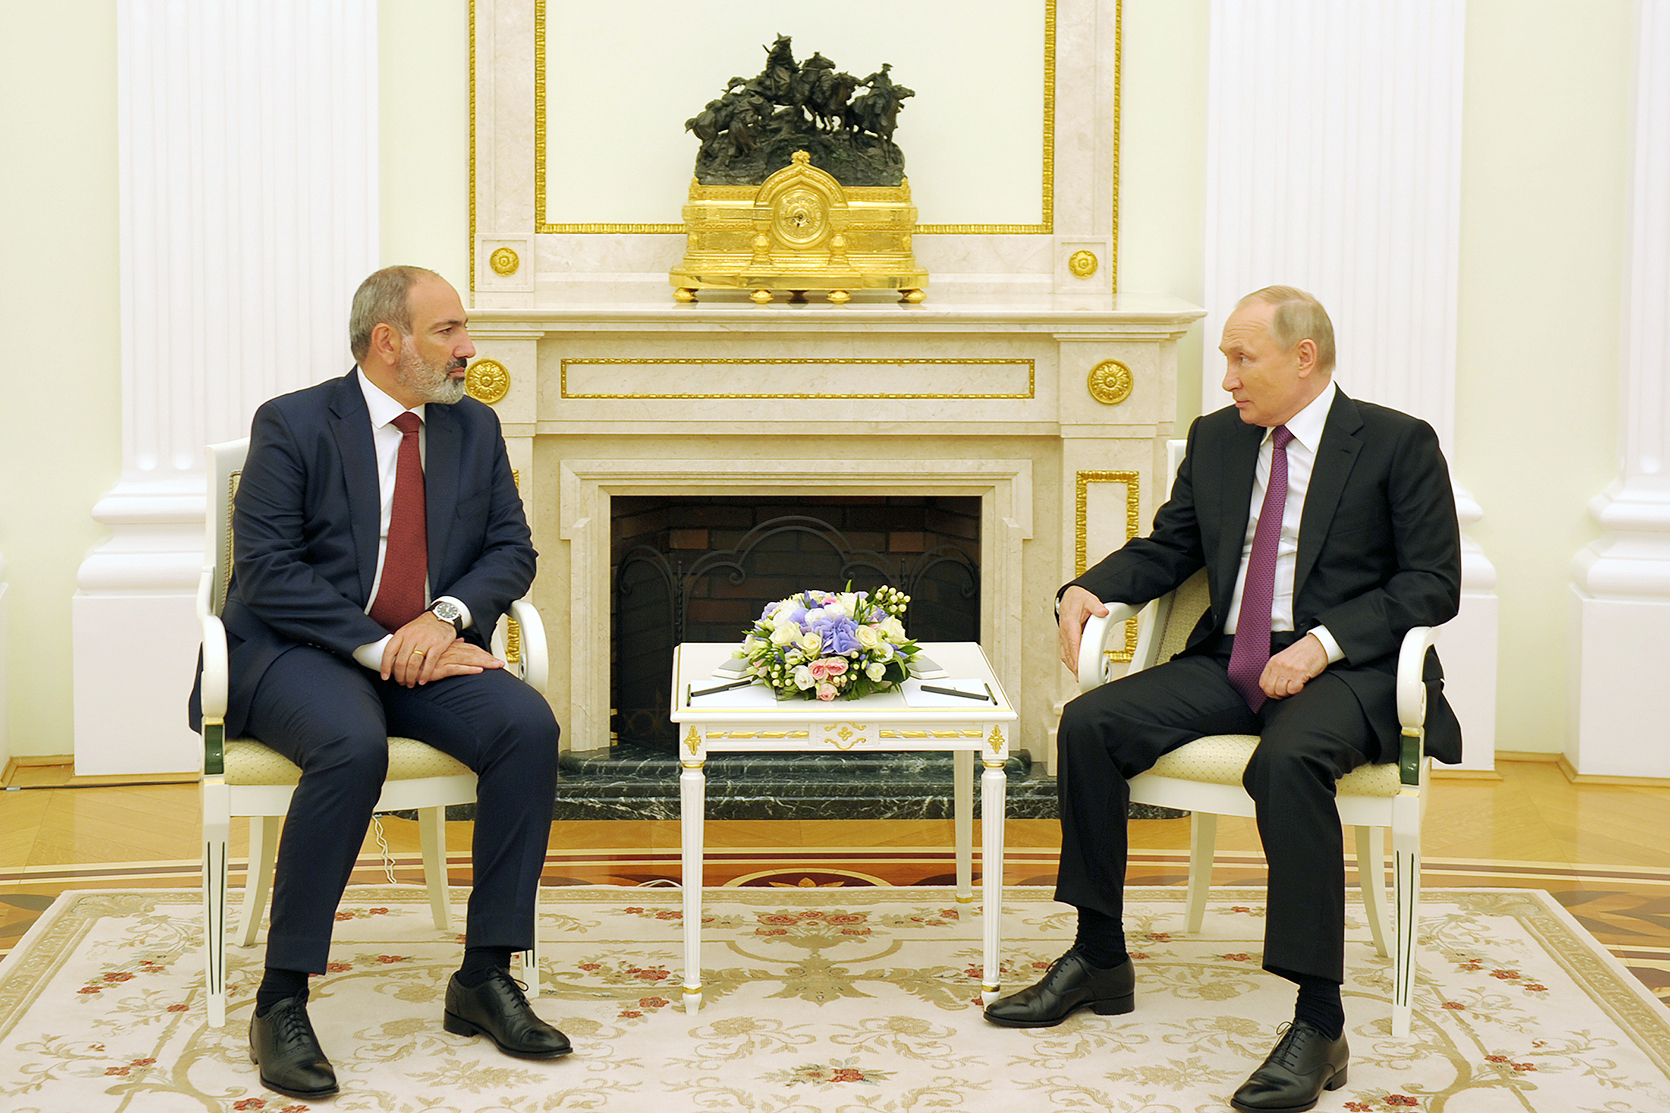 Փաշինյանն ու Պուտինը կքննարկեն հայ-ռուսական դաշնակցային հարաբերությունների օրակարգային հարցեր. ՀՀ վարչապետն աշխատանքային այցով կմեկնի ՌԴ